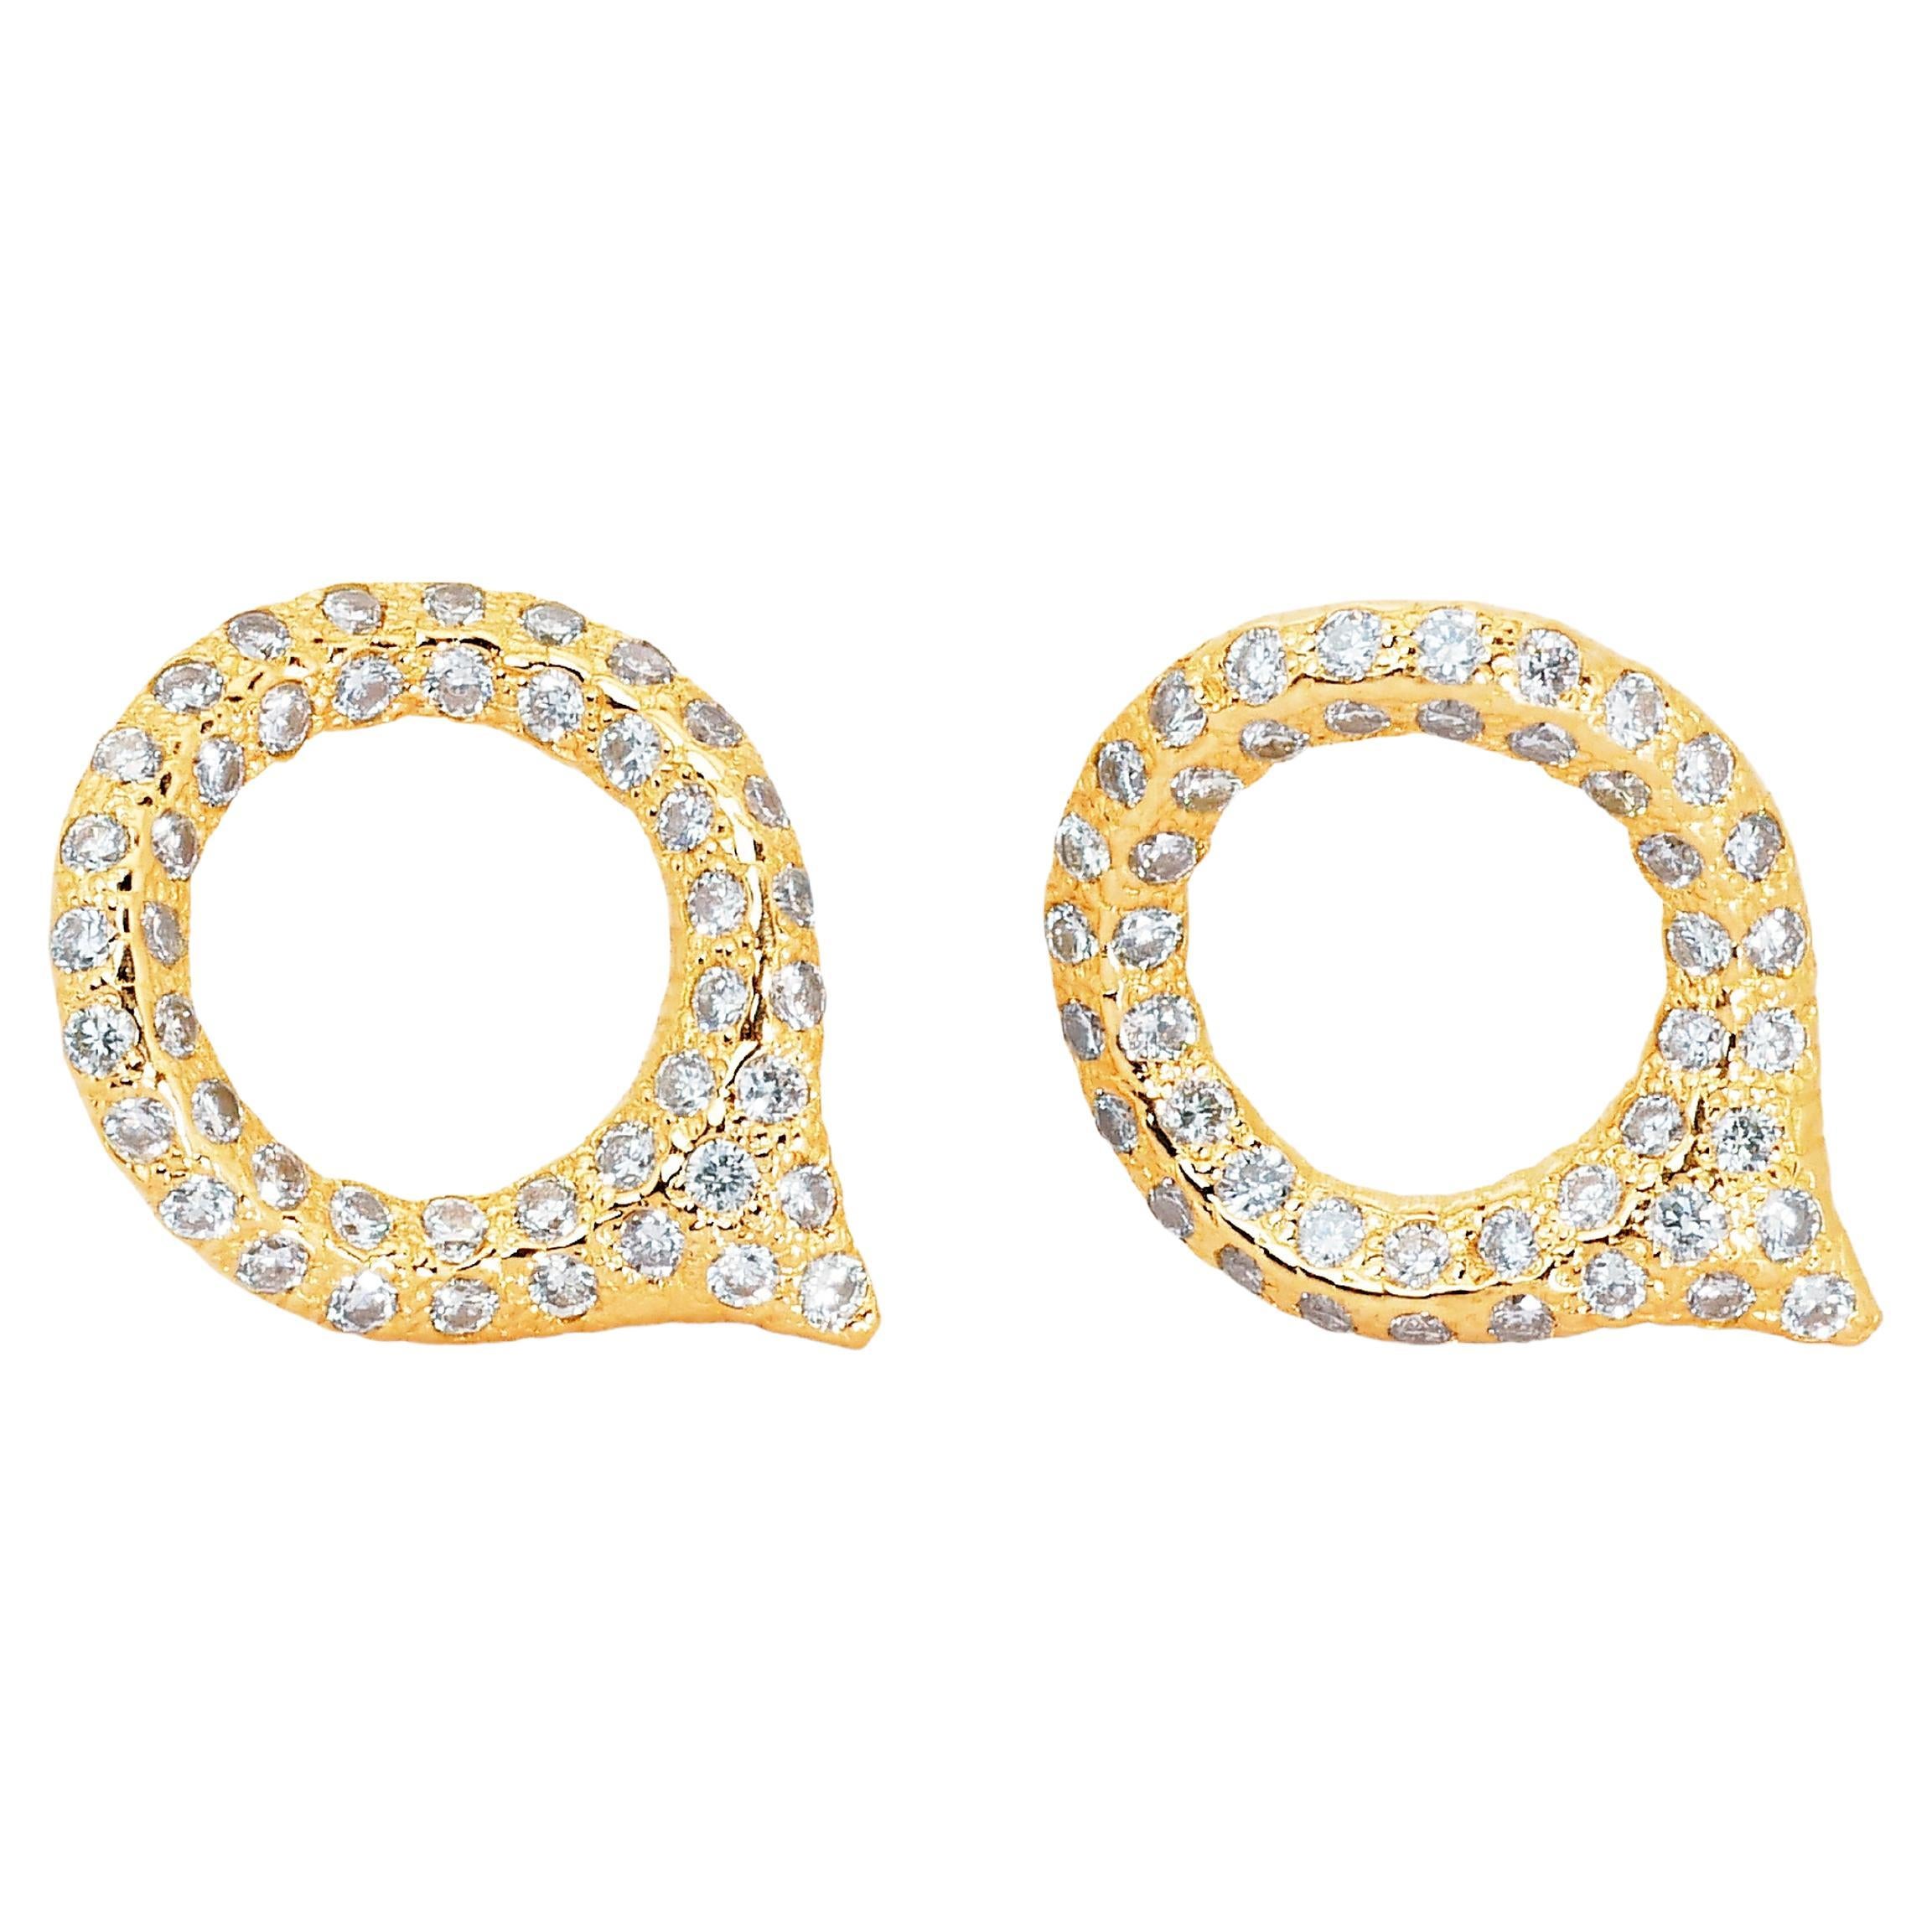 Boucles d'oreilles glamour en or jaune 18 carats avec certificat IGI et diamants naturels de 1,28 carat